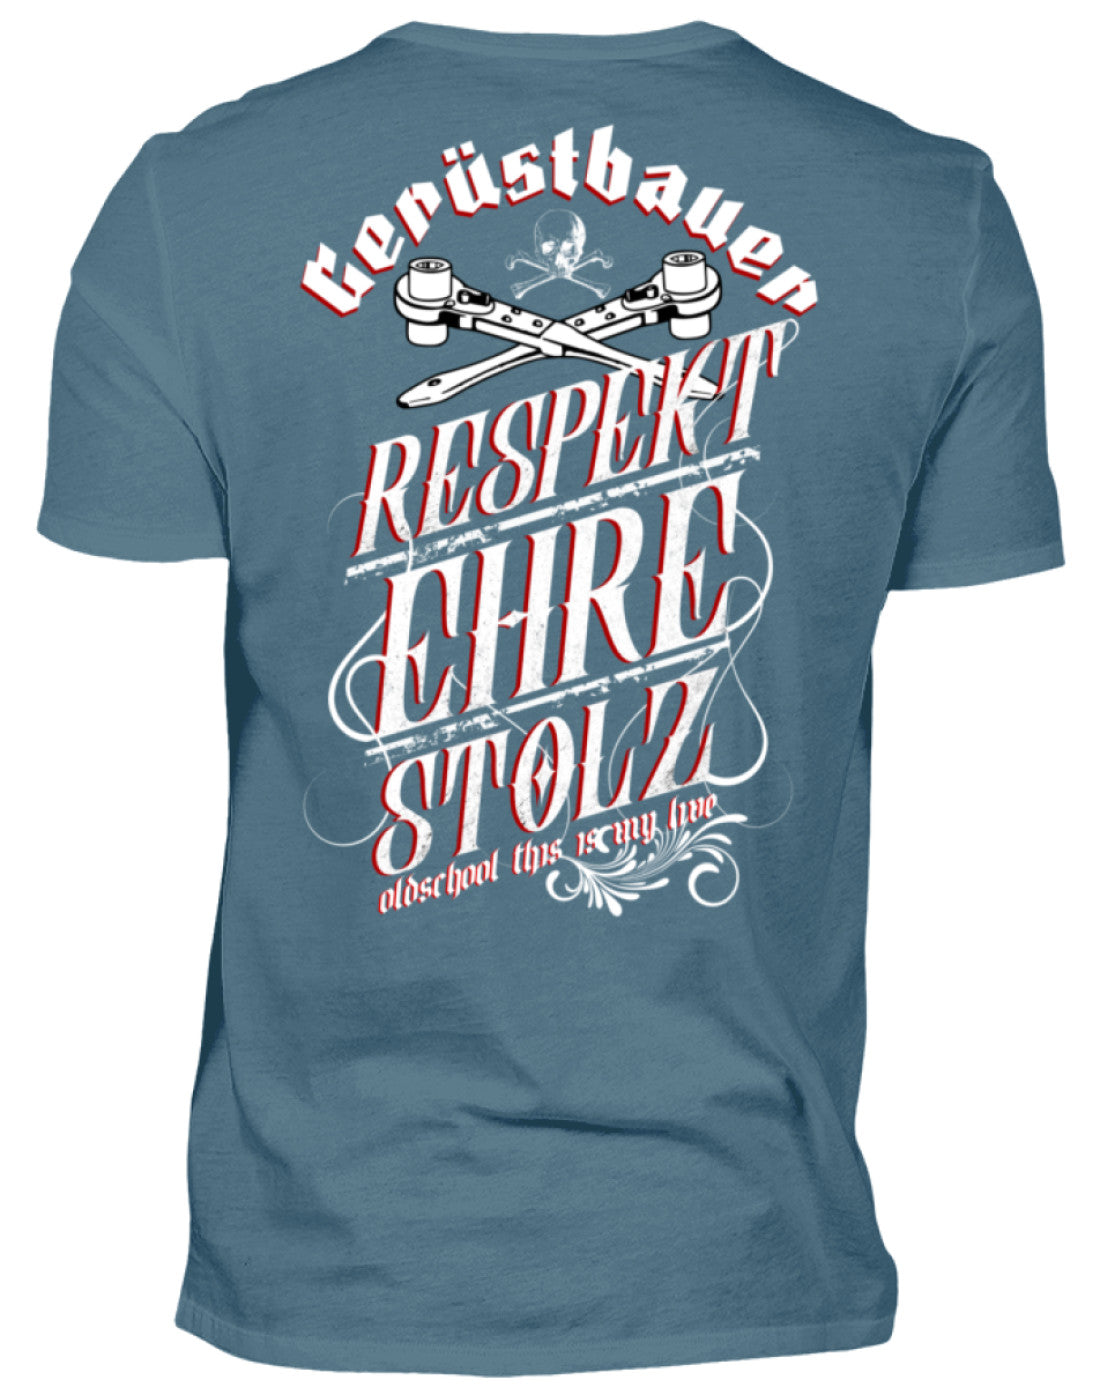 Gerüstbauer T-Shirt / Respekt - Ehre - Stolz €24.95 Gerüstbauer - Shop >>